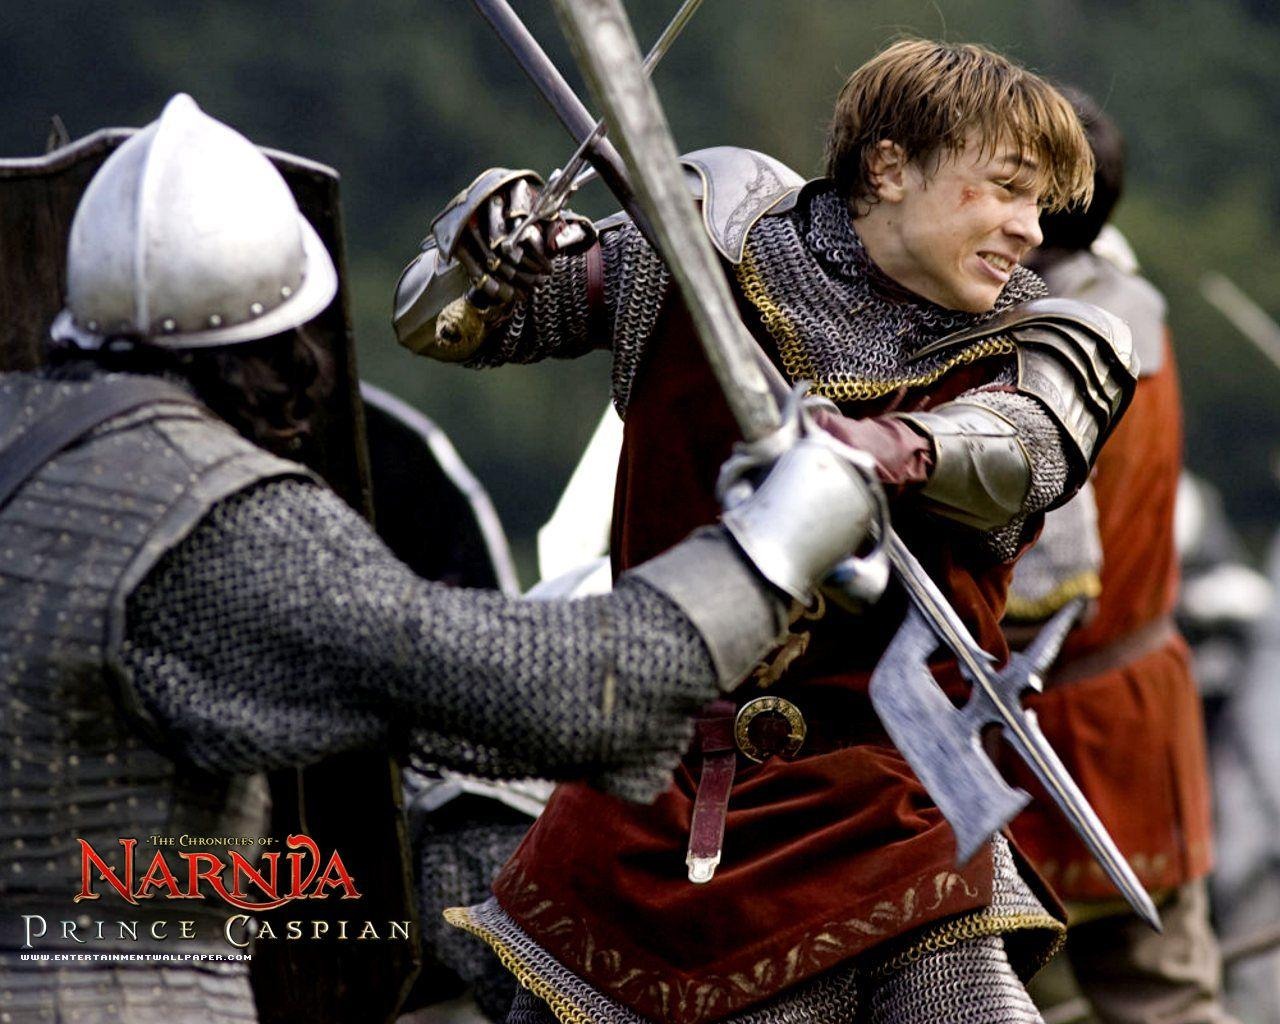 Las Crónicas de Narnia 2: El Príncipe Caspian #6 - 1280x1024